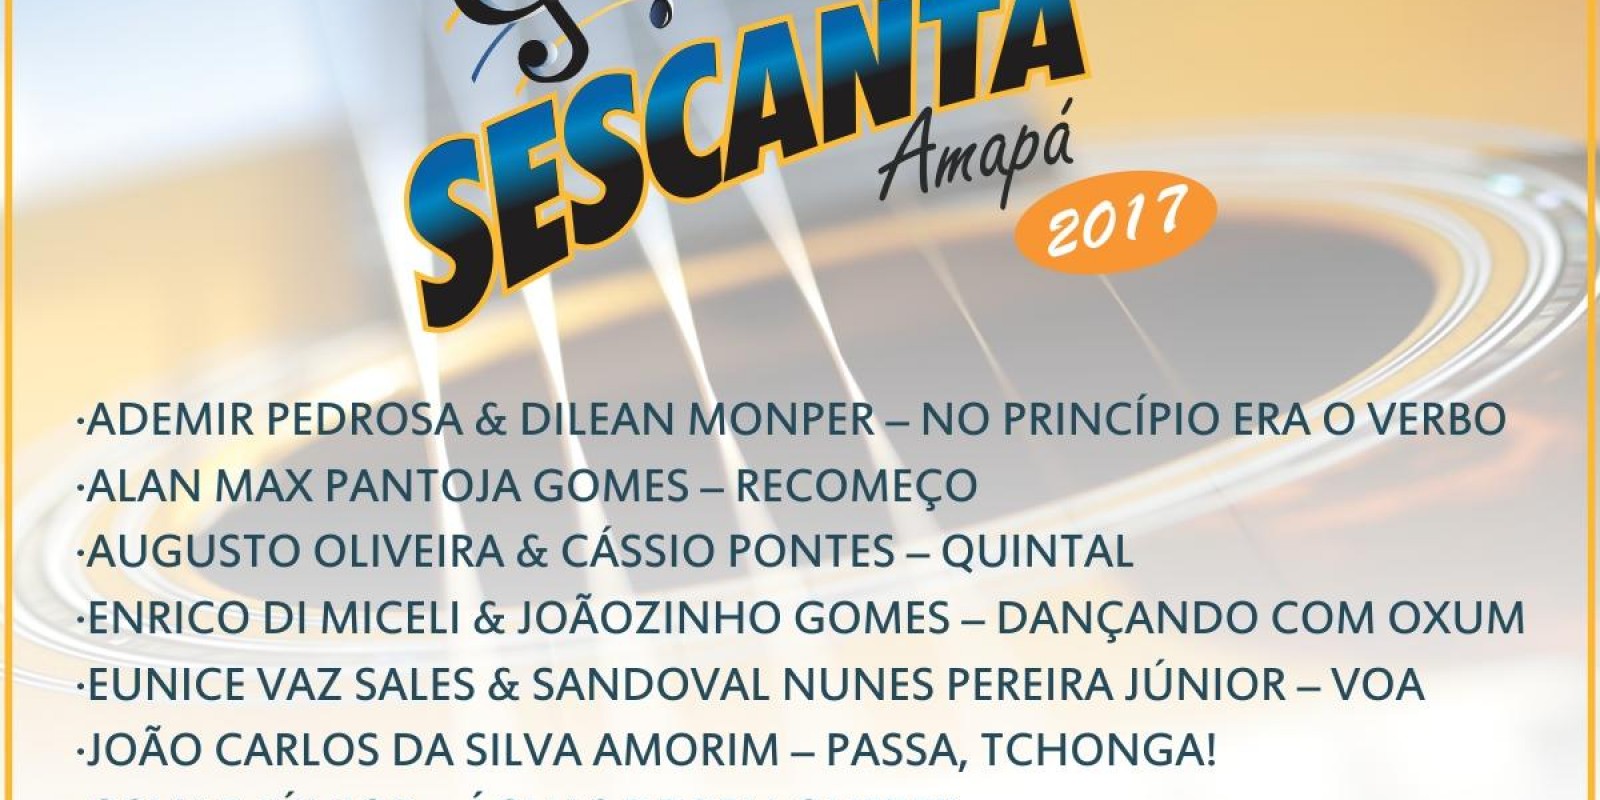 Compositores Classificados para o projeto Sescanta 2017